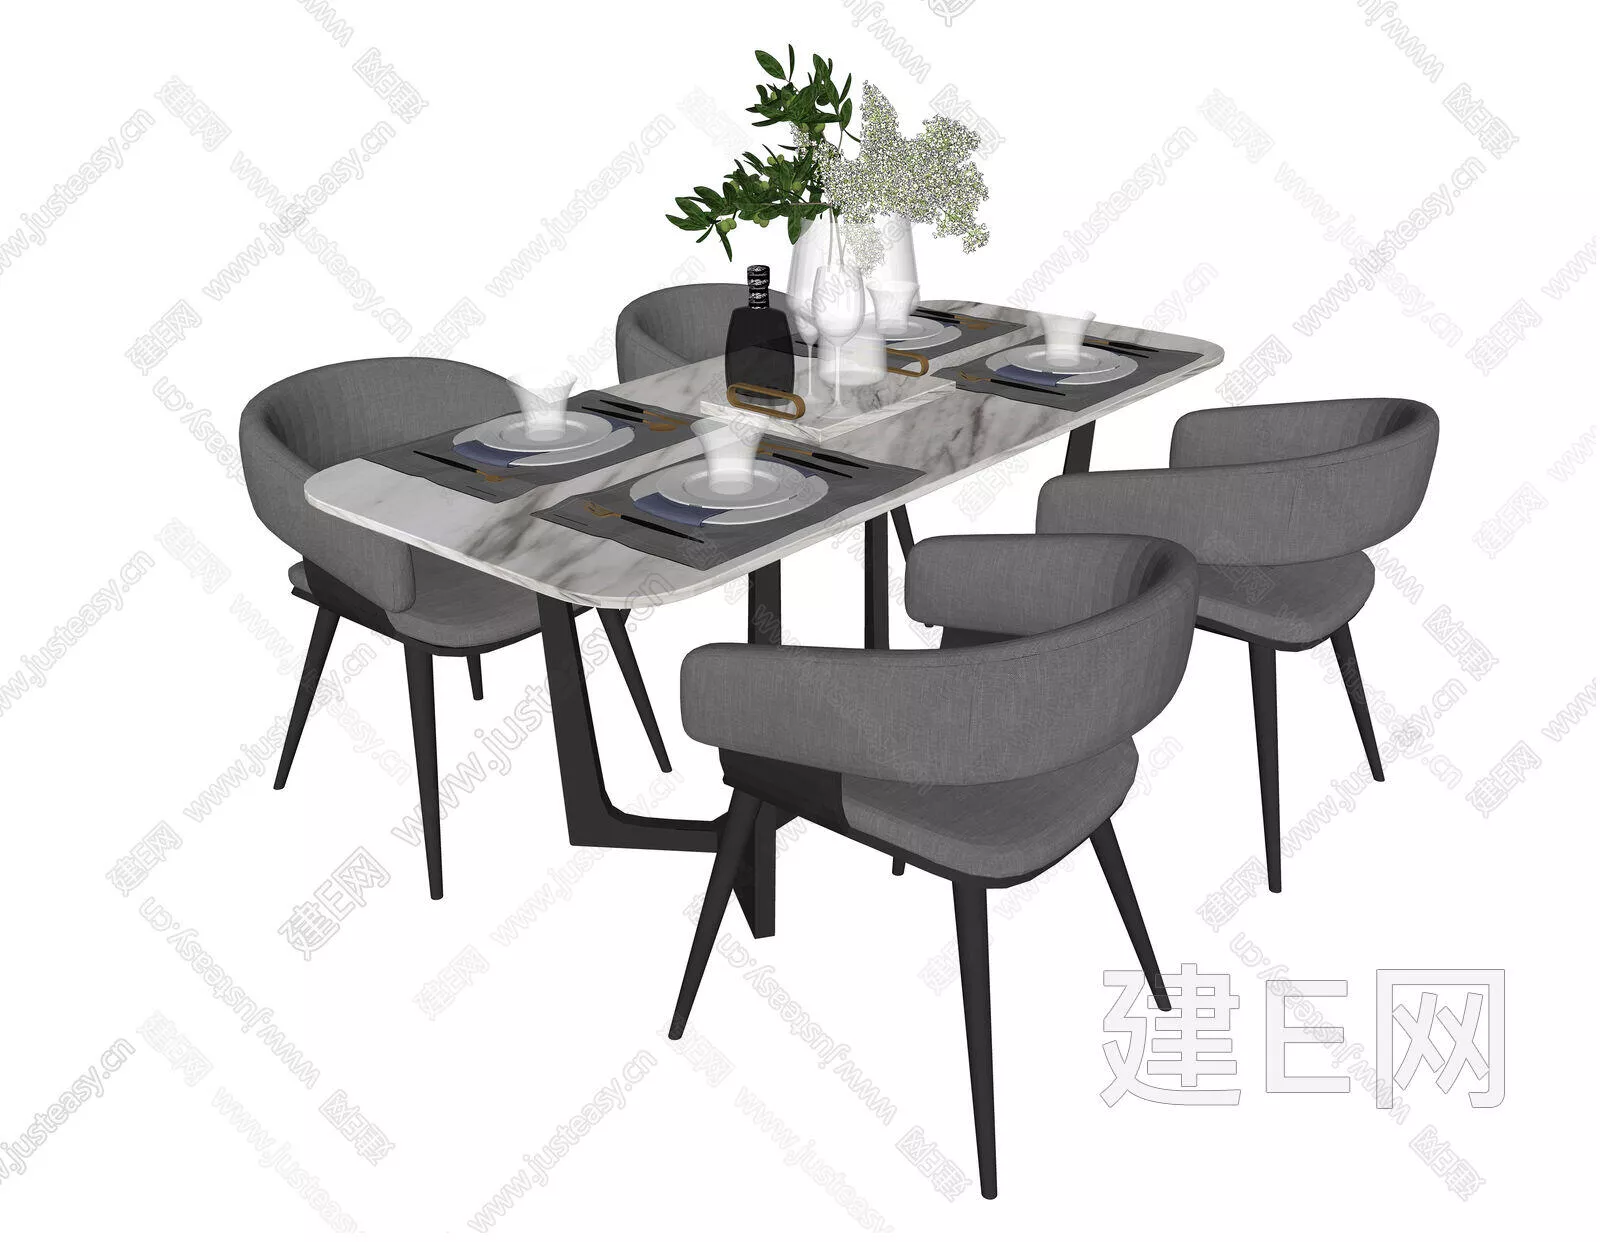 MODERN DINING TABLE SET - SKETCHUP 3D MODEL - ENSCAPE - 112542061